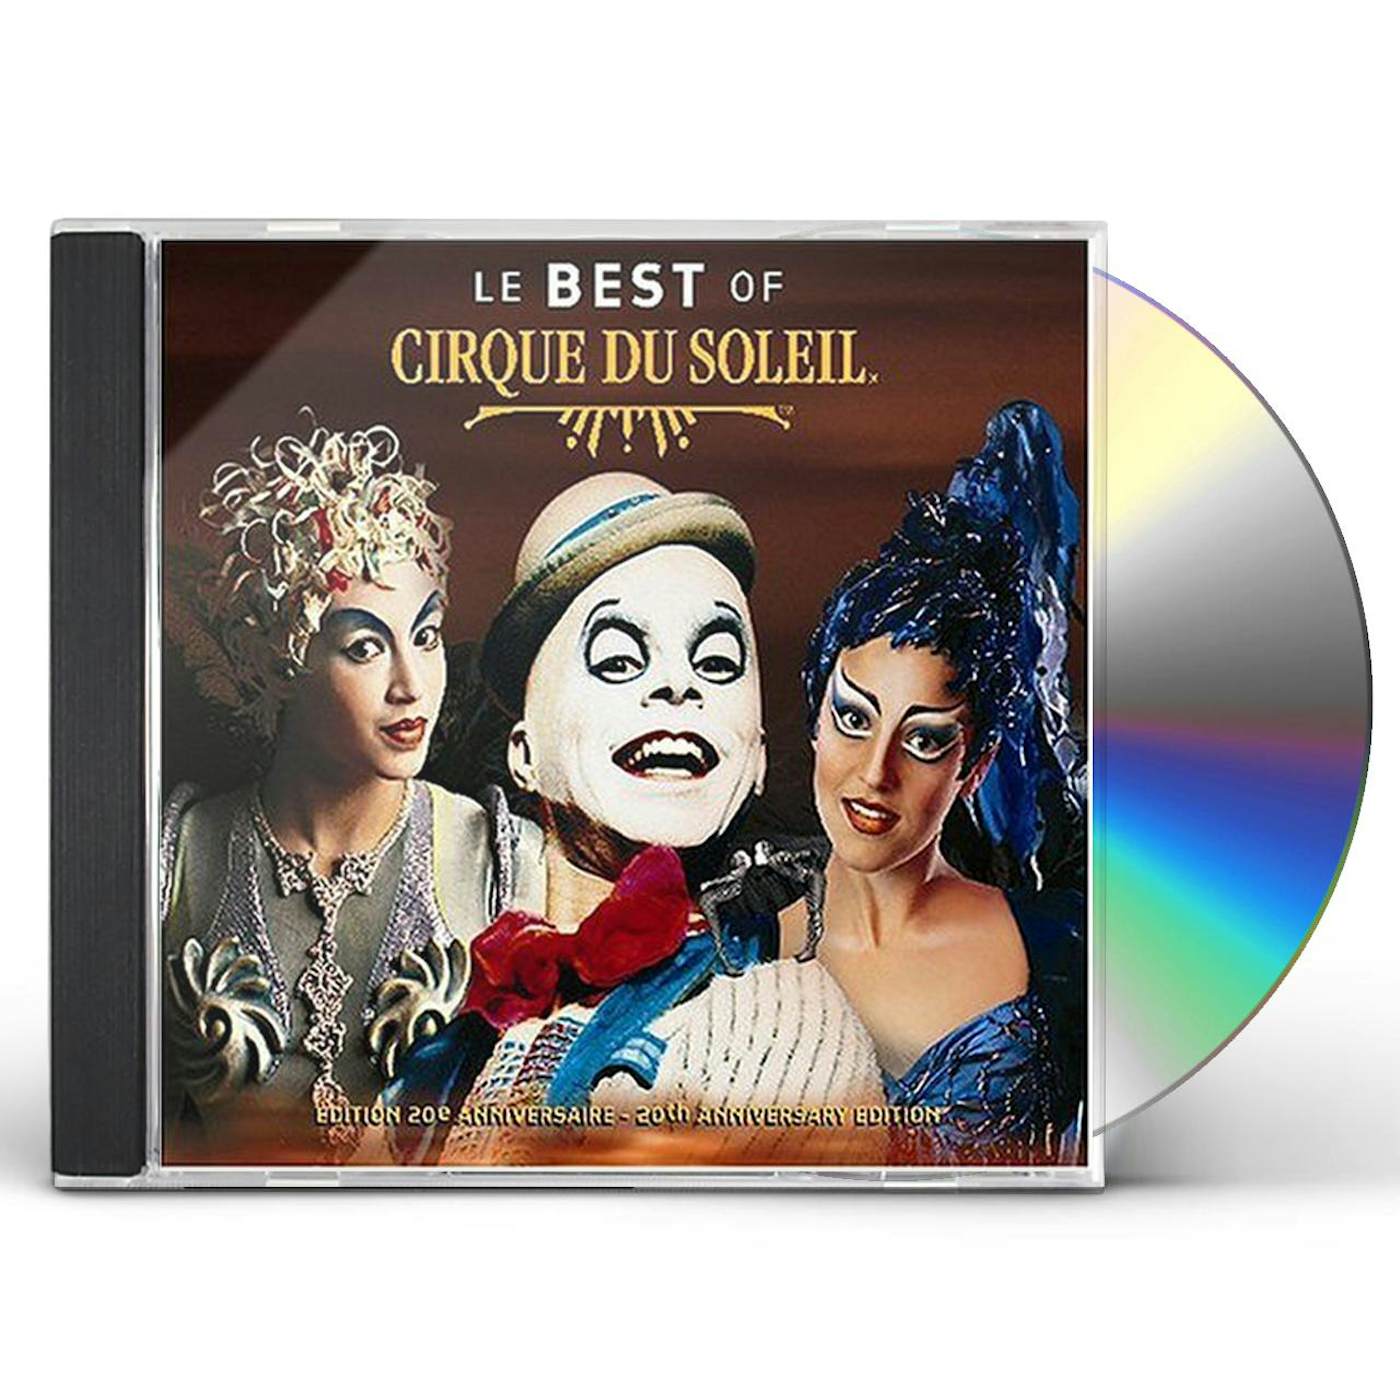 Cirque du Soleil LE BEST OF CD